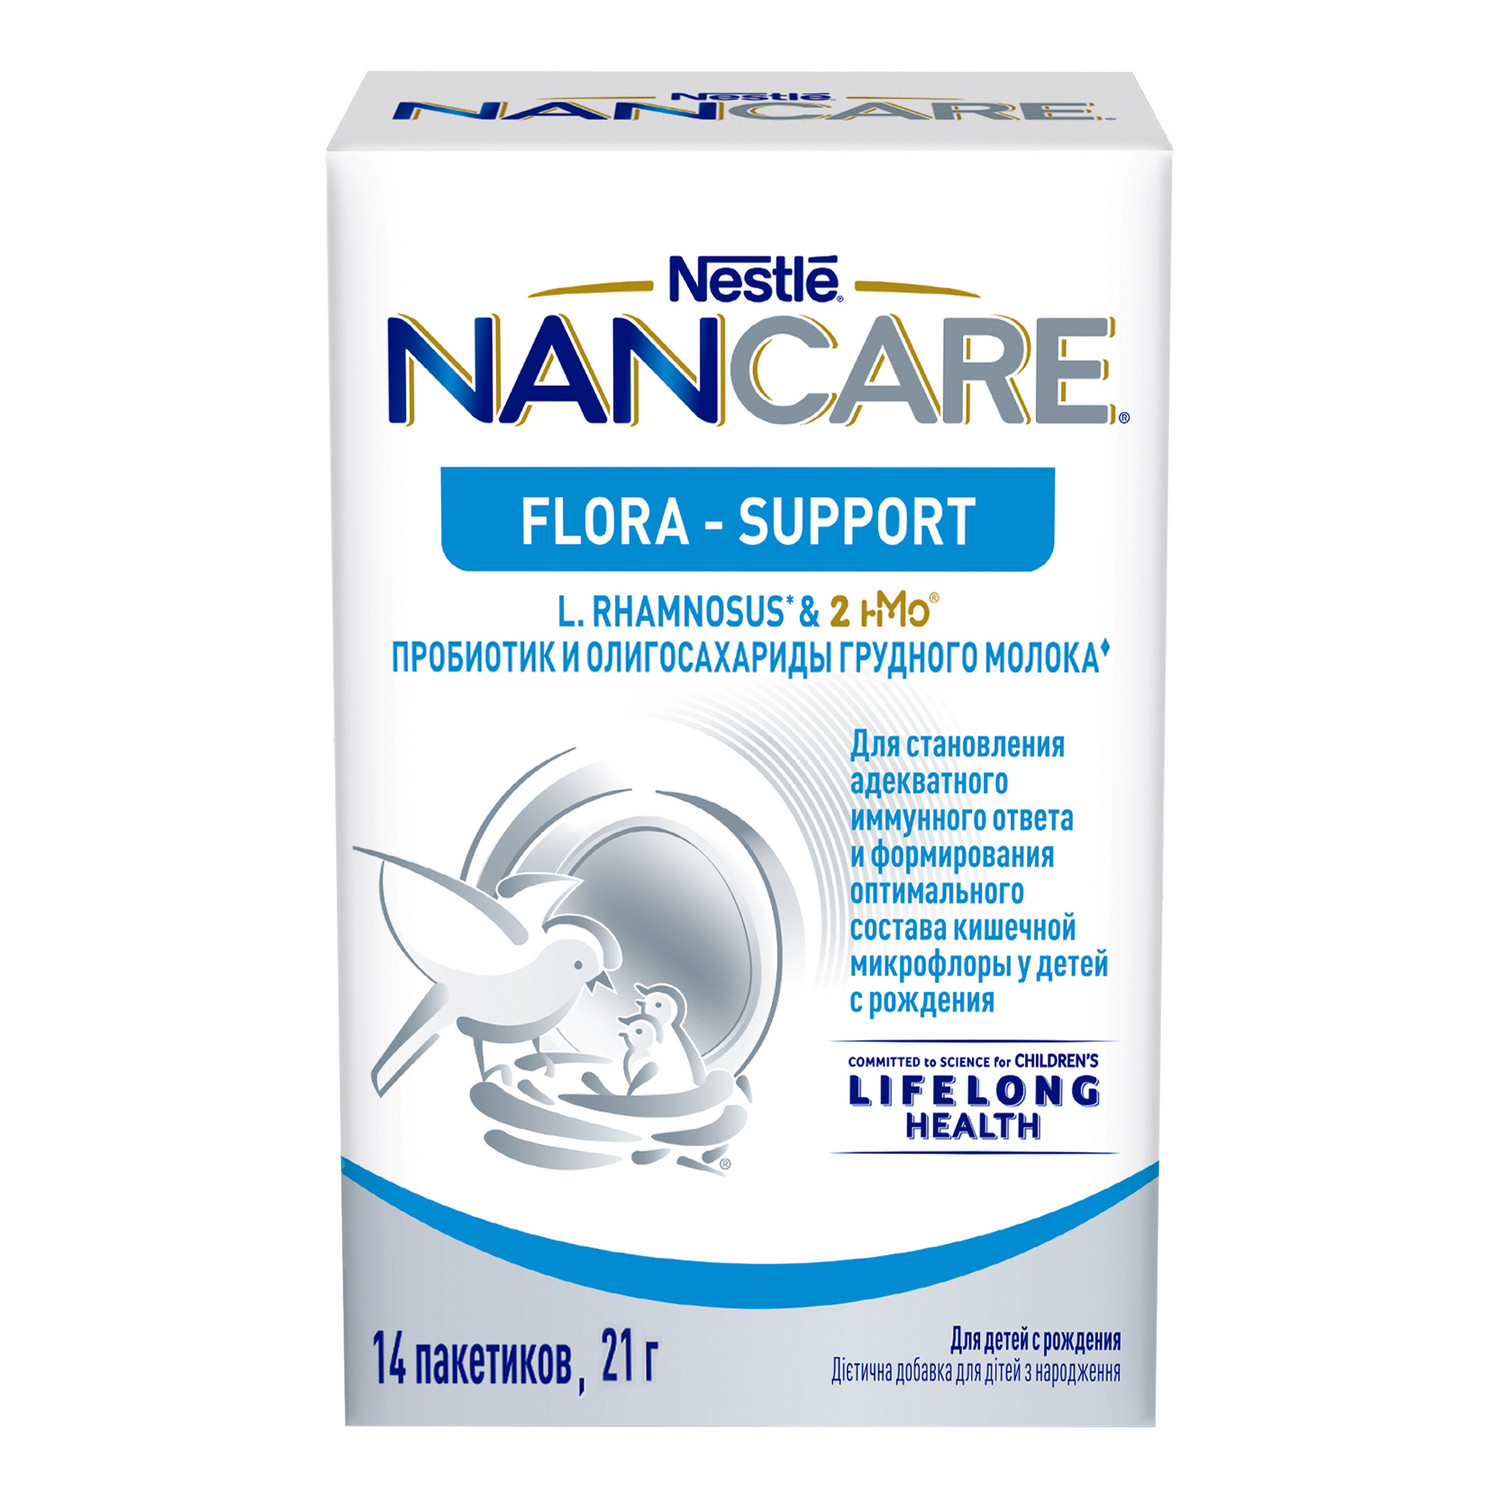 Специализированная пищевая продукция Nancare Flora support 21г - фото 1